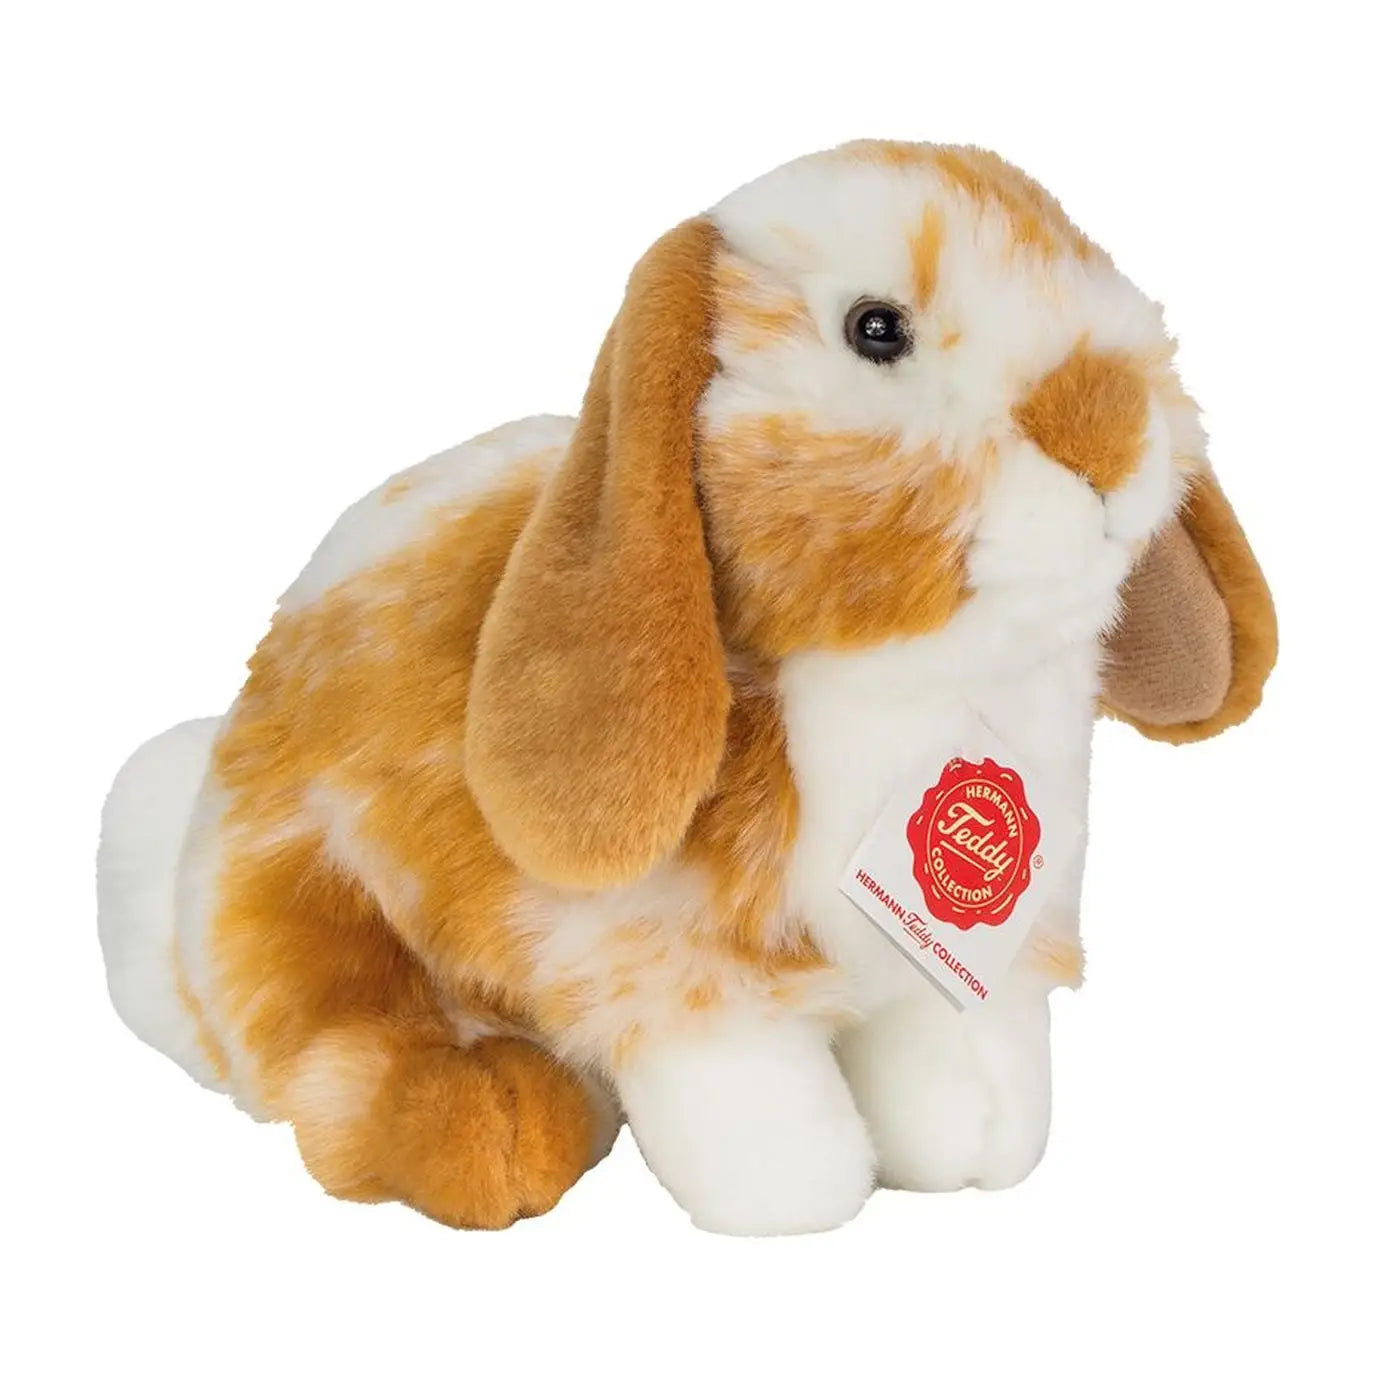 Floppy-Eared Ginger Rabbit Plush